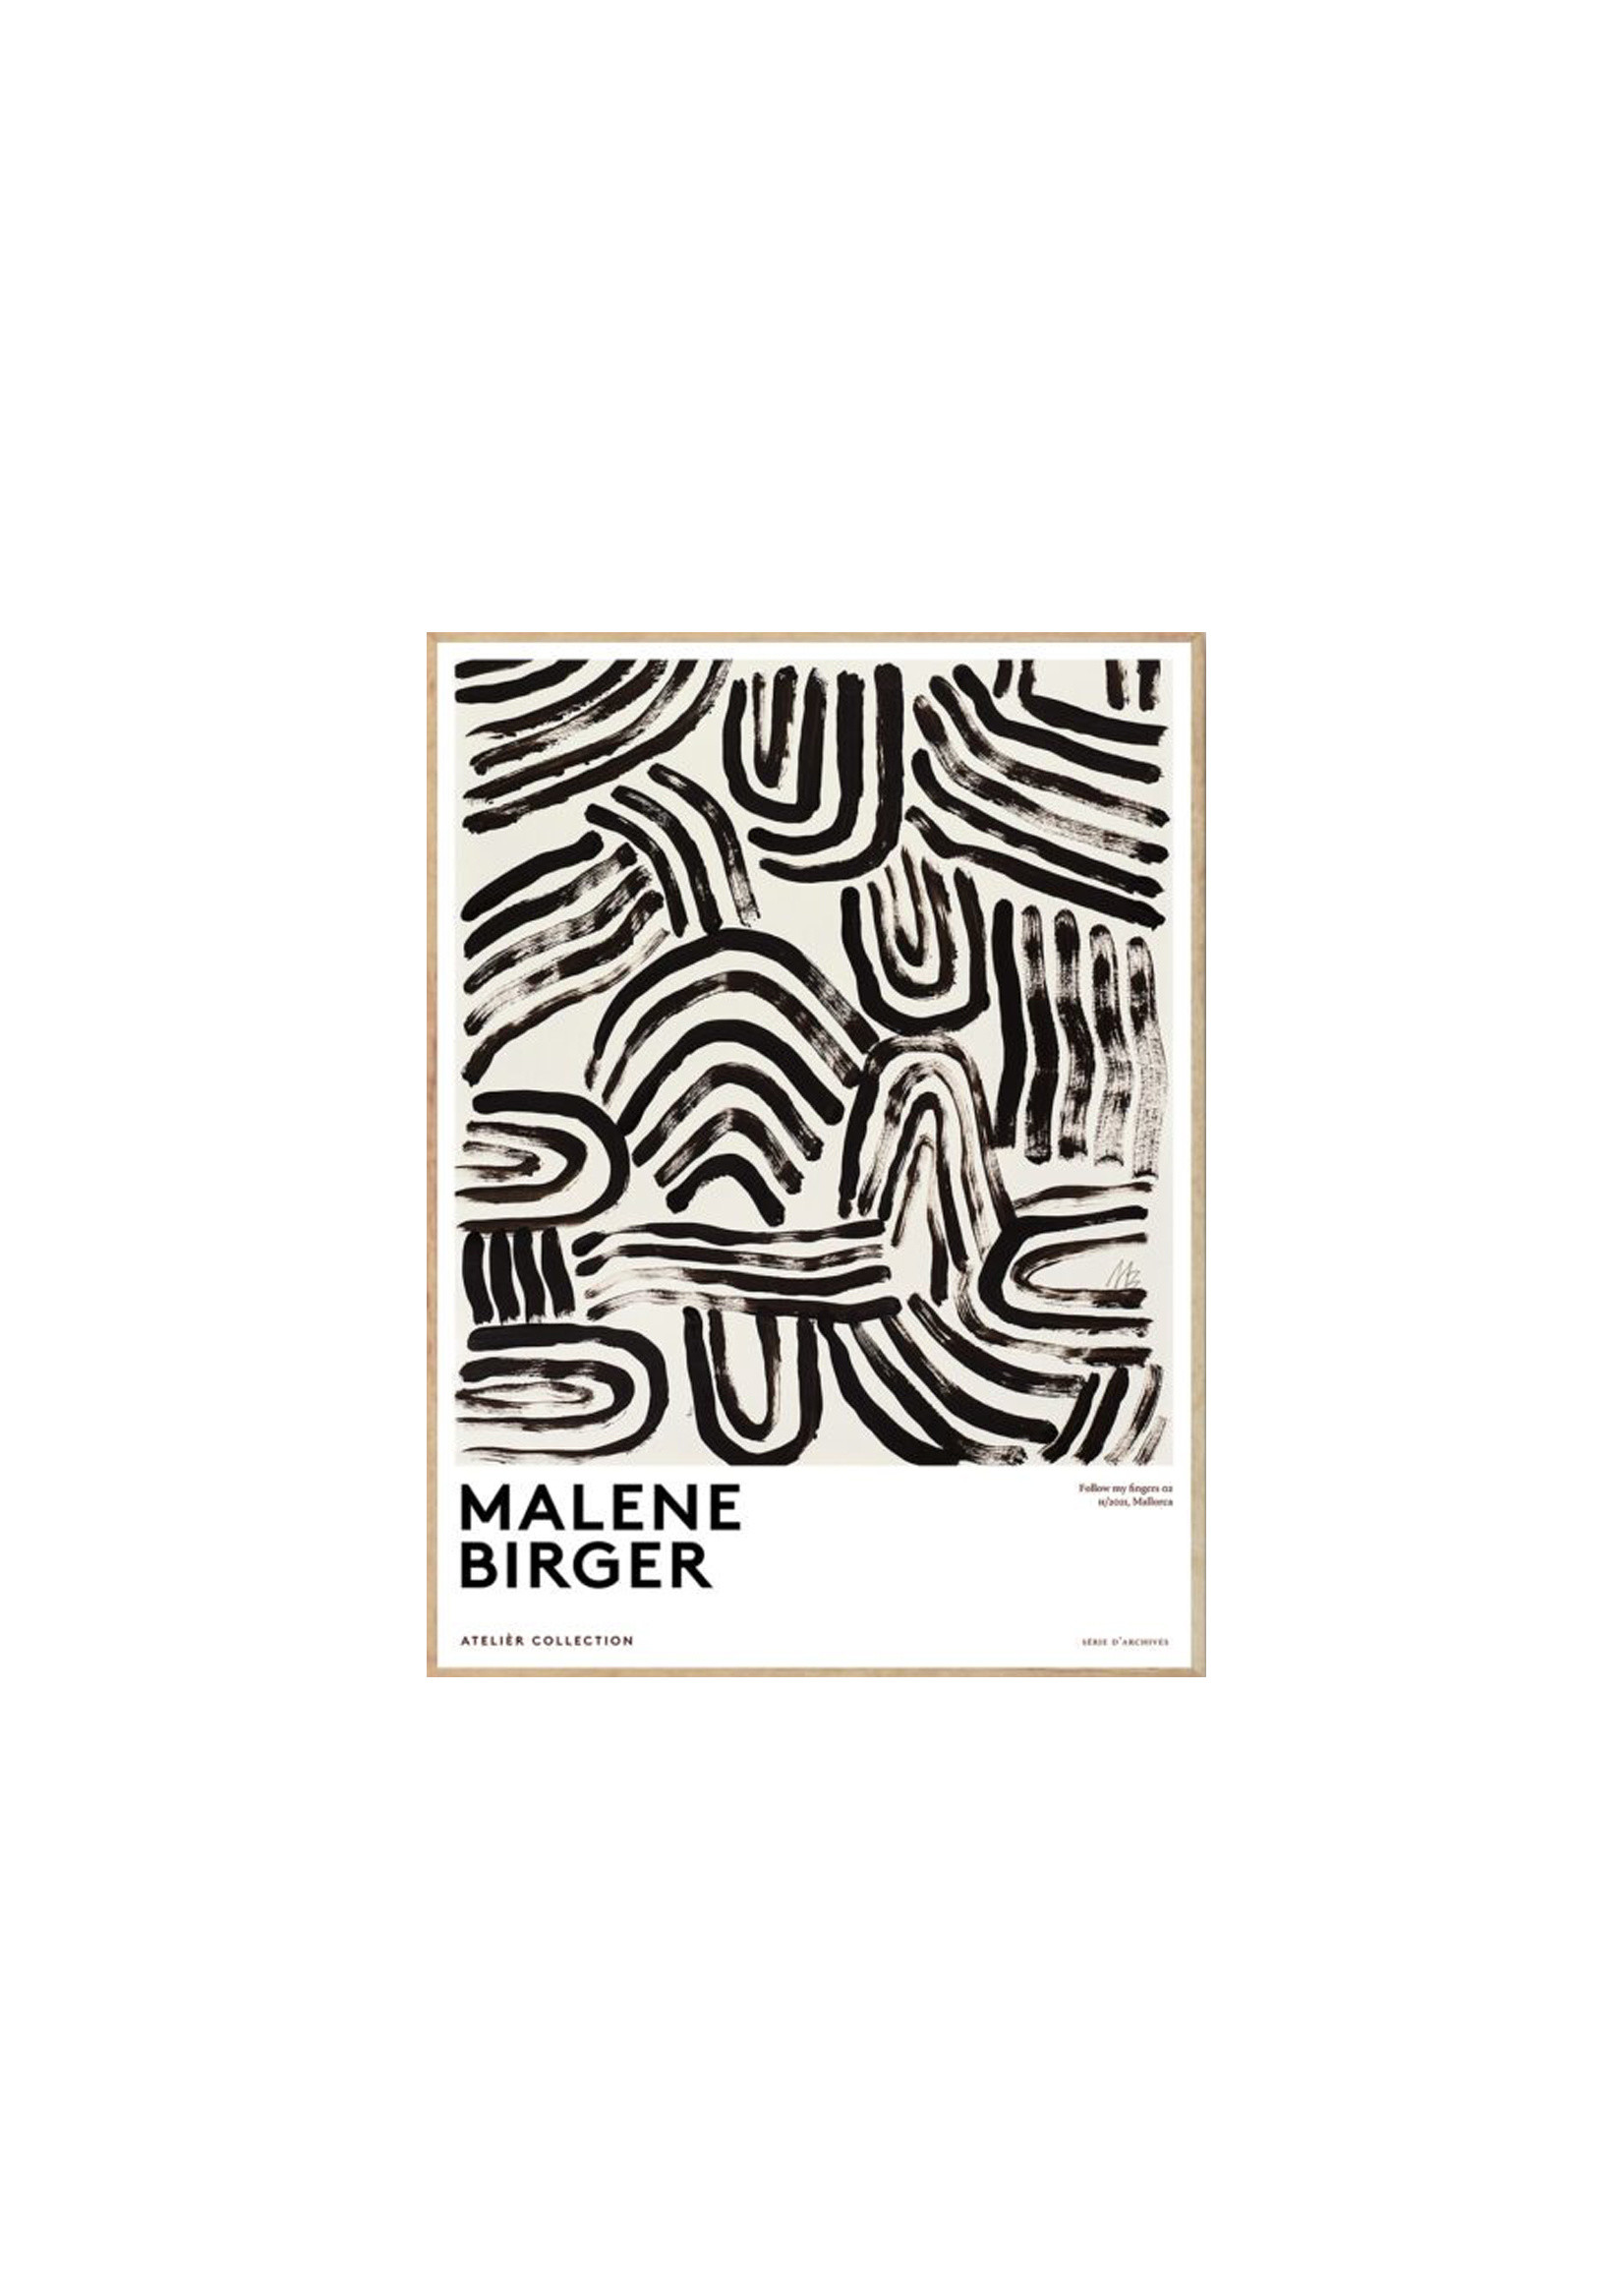 Follow My Fingers by Marlene Birger (50x70)